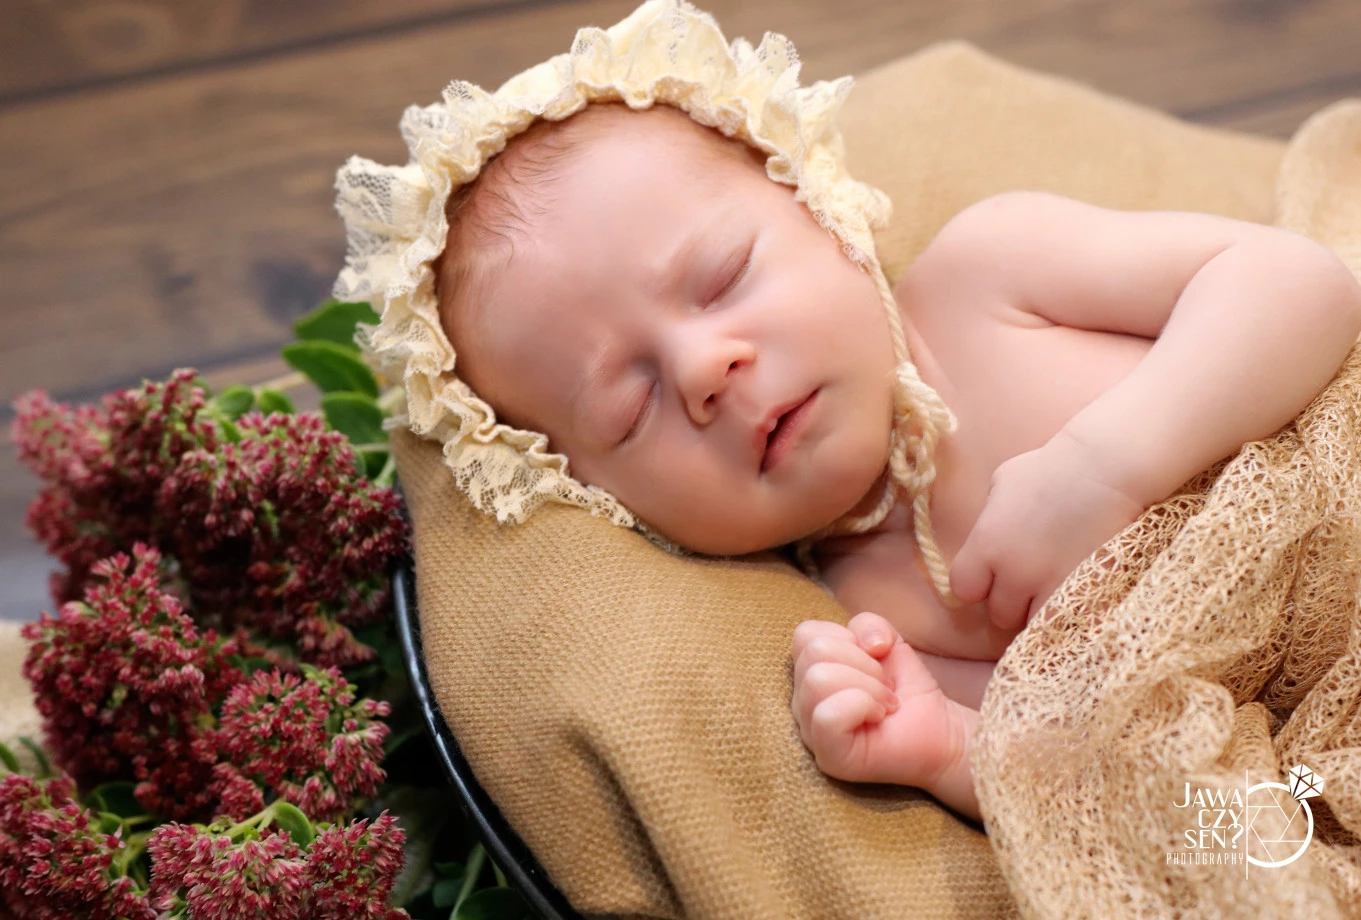 fotograf siedlce jawa-czy-sen-photography portfolio zdjecia noworodkow sesje noworodkowe niemowlę